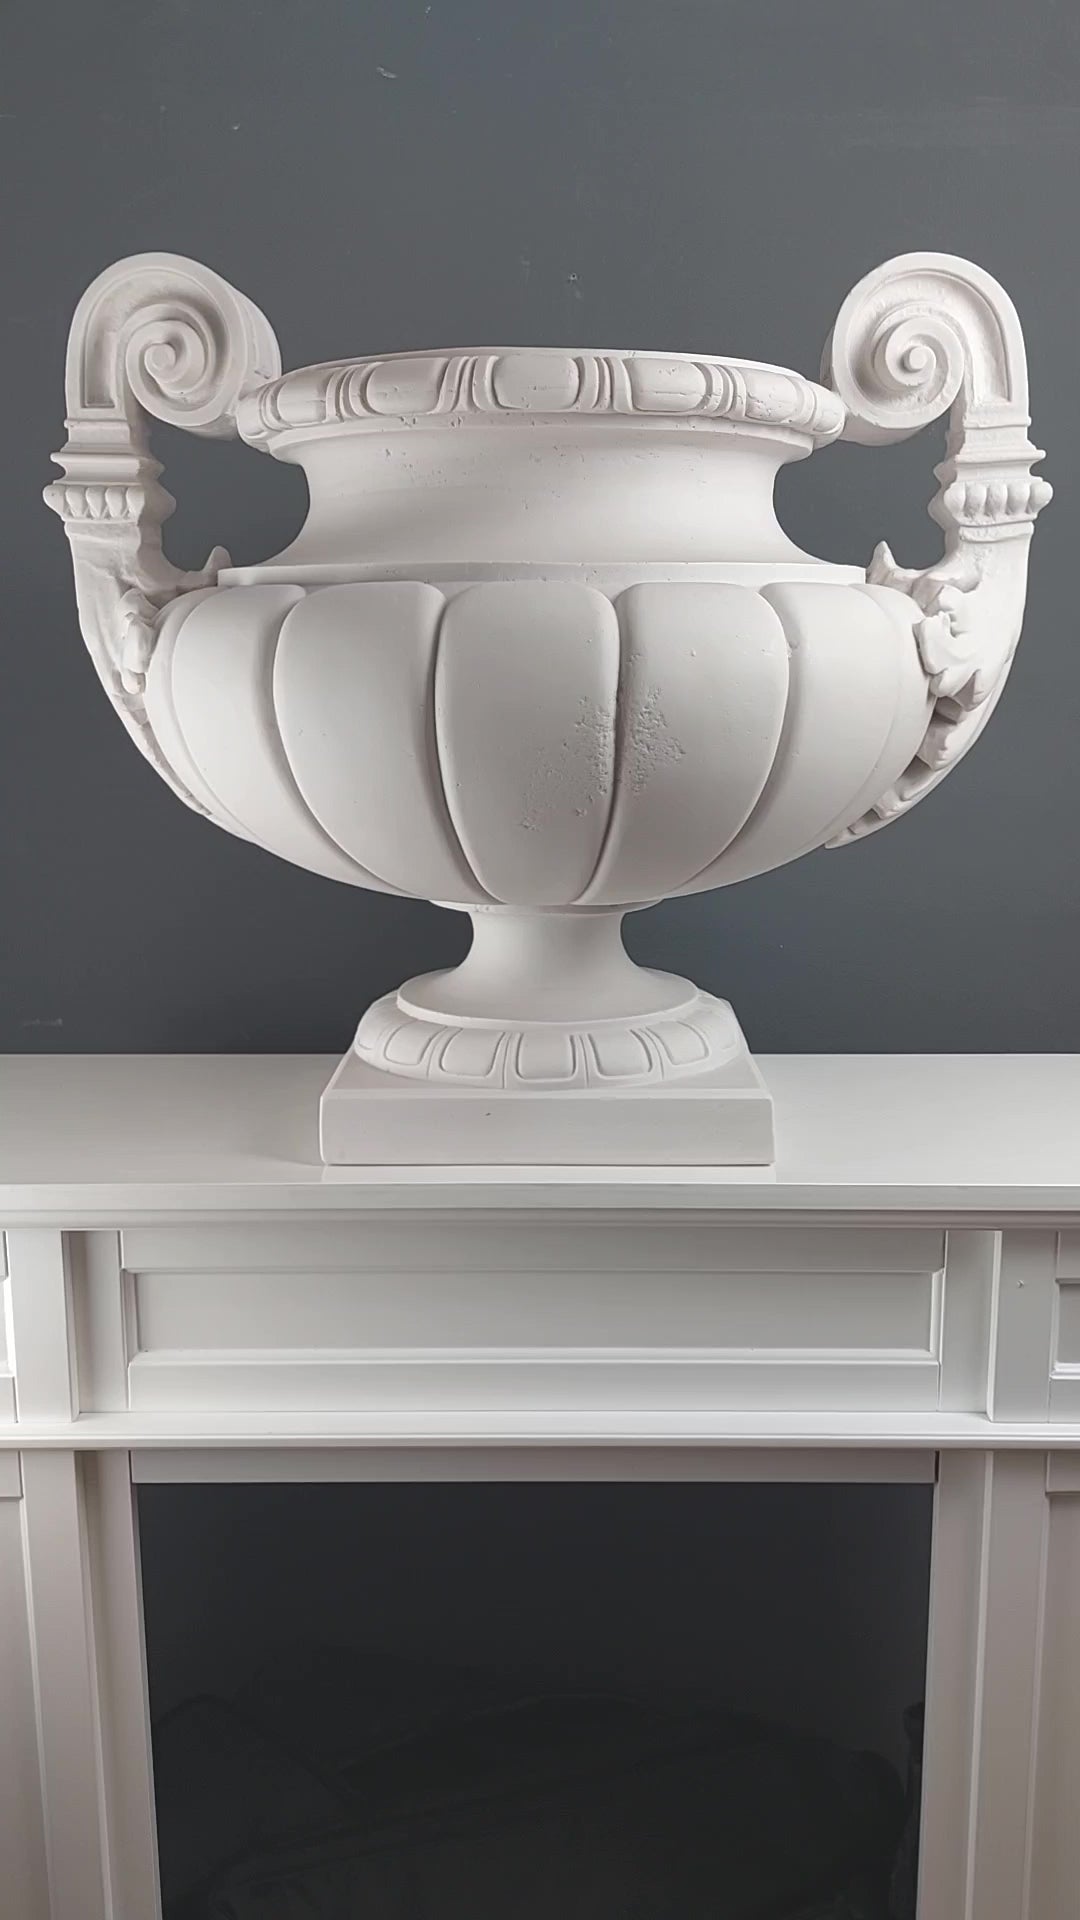 Pots de jardinières de vase d'extérieur sculptés en marbre blanc